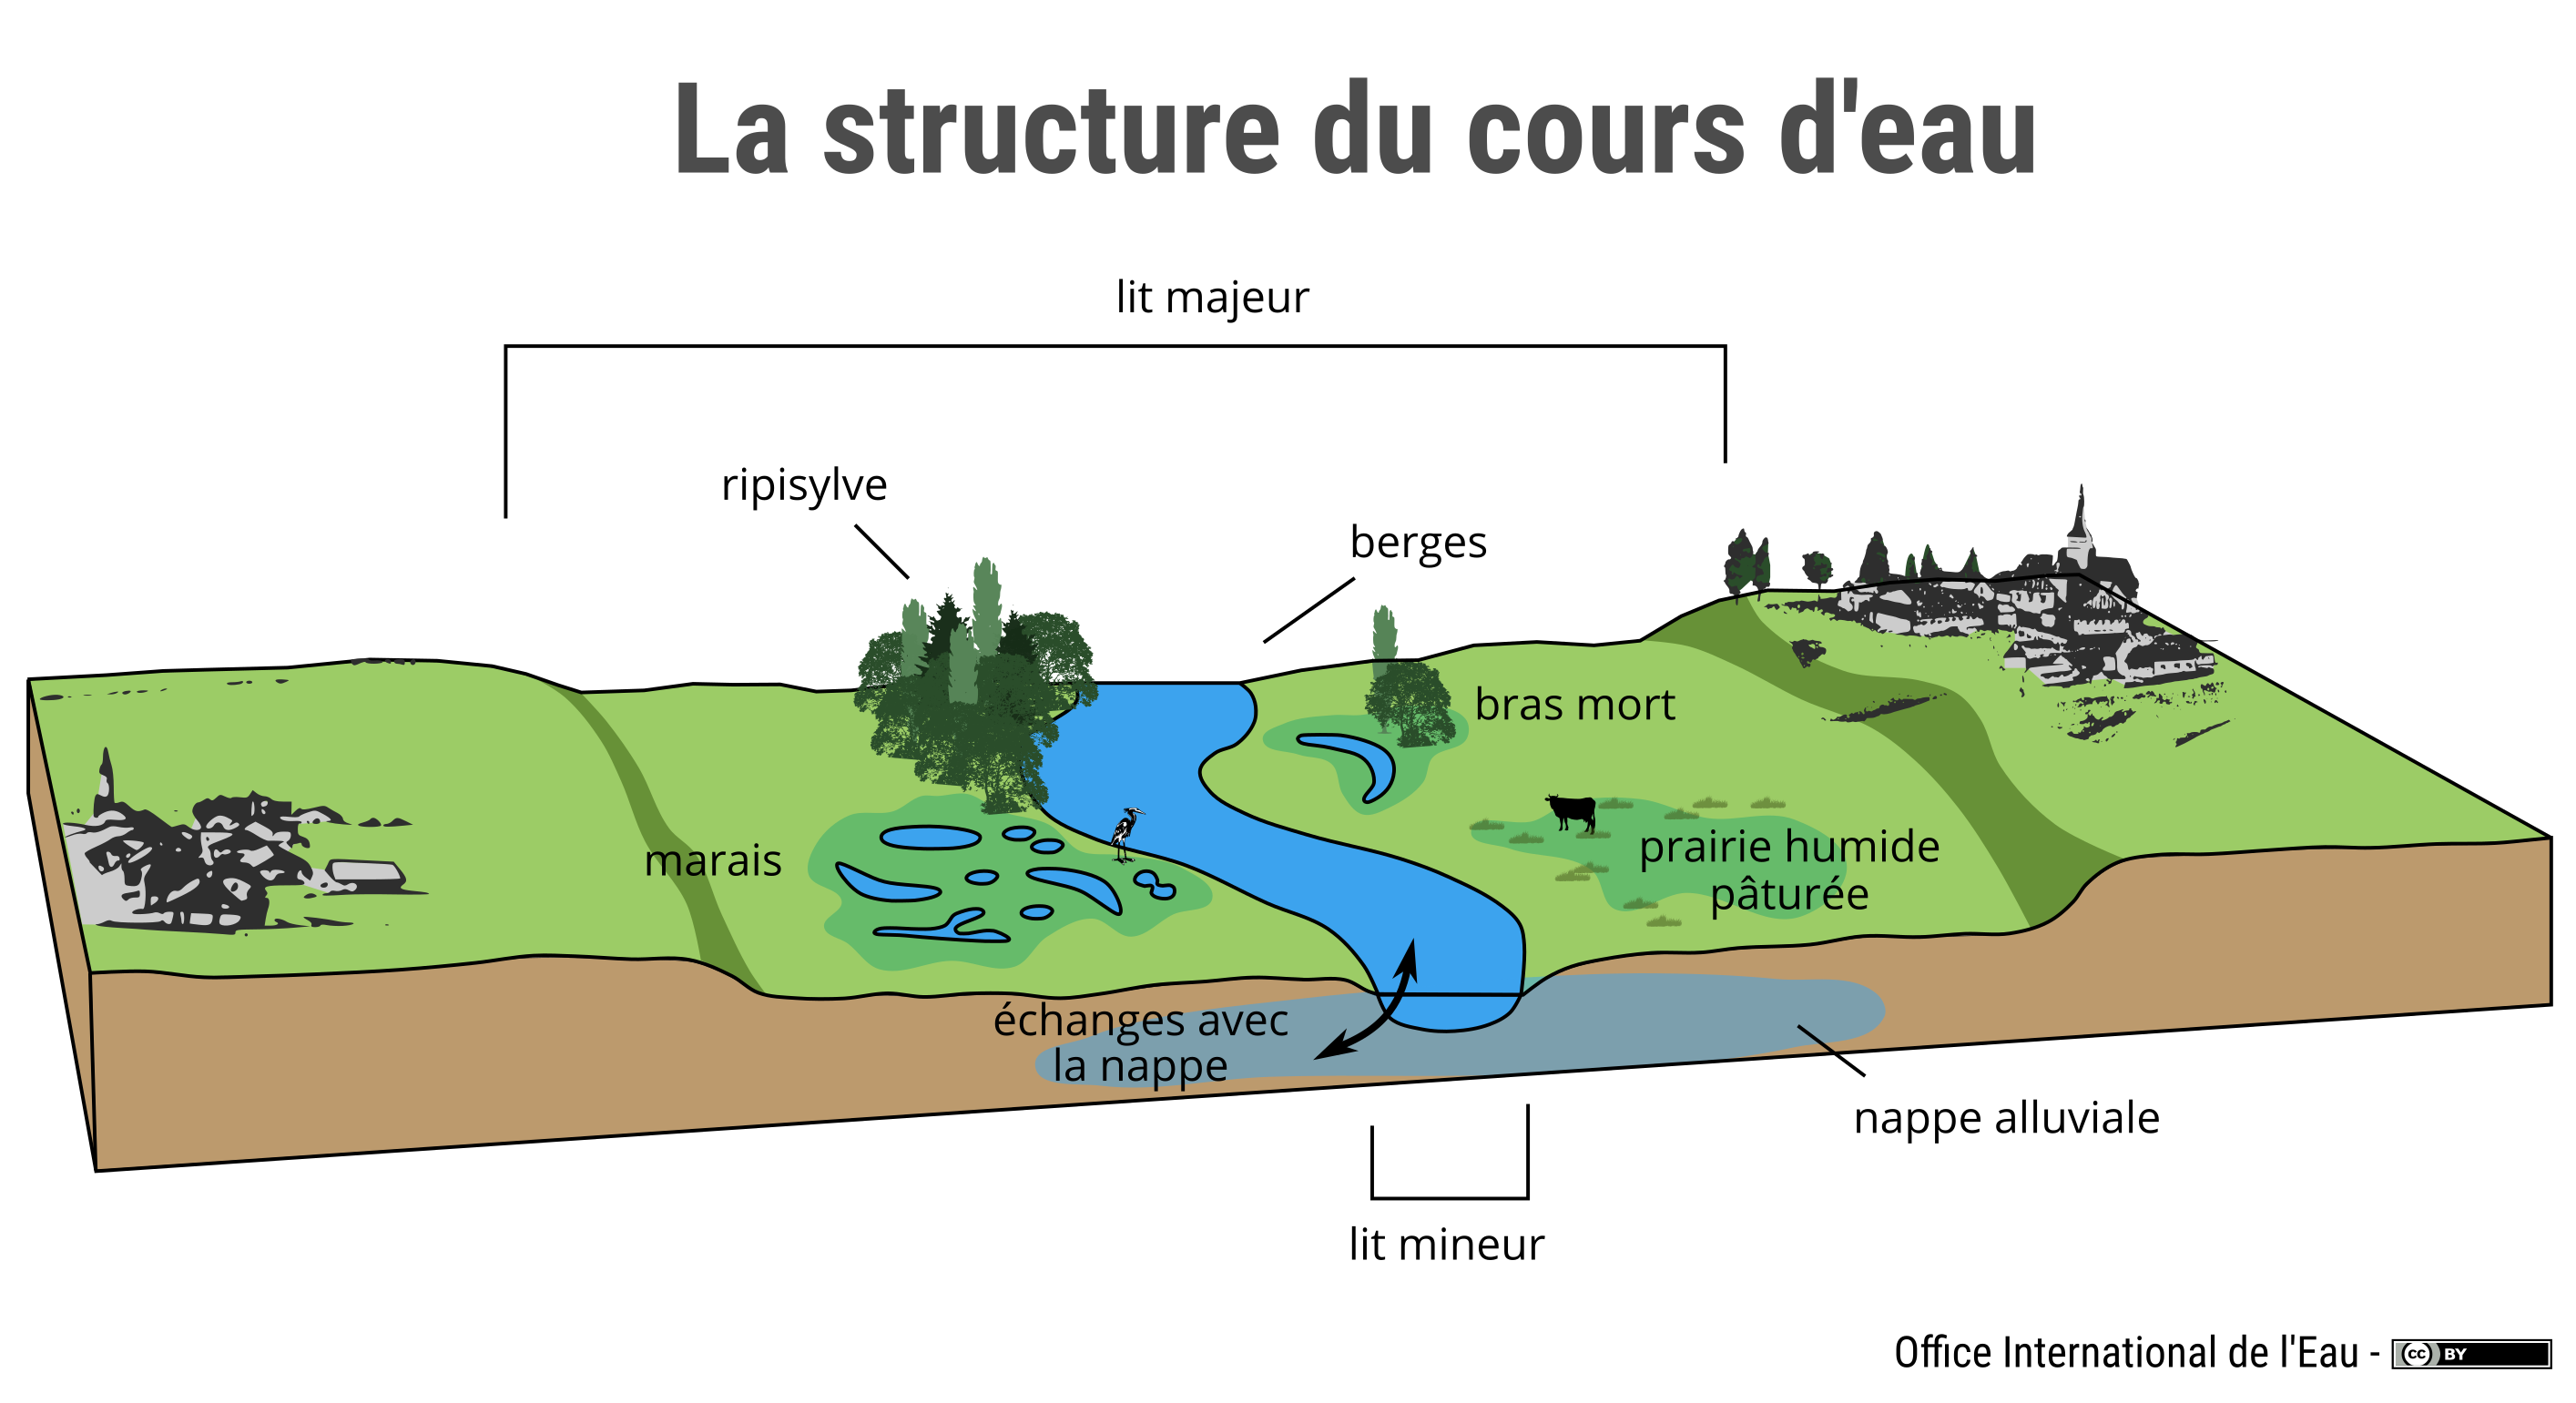 Méandre D Un Cours D Eau La structure du cours d'eau | Office International de l'Eau